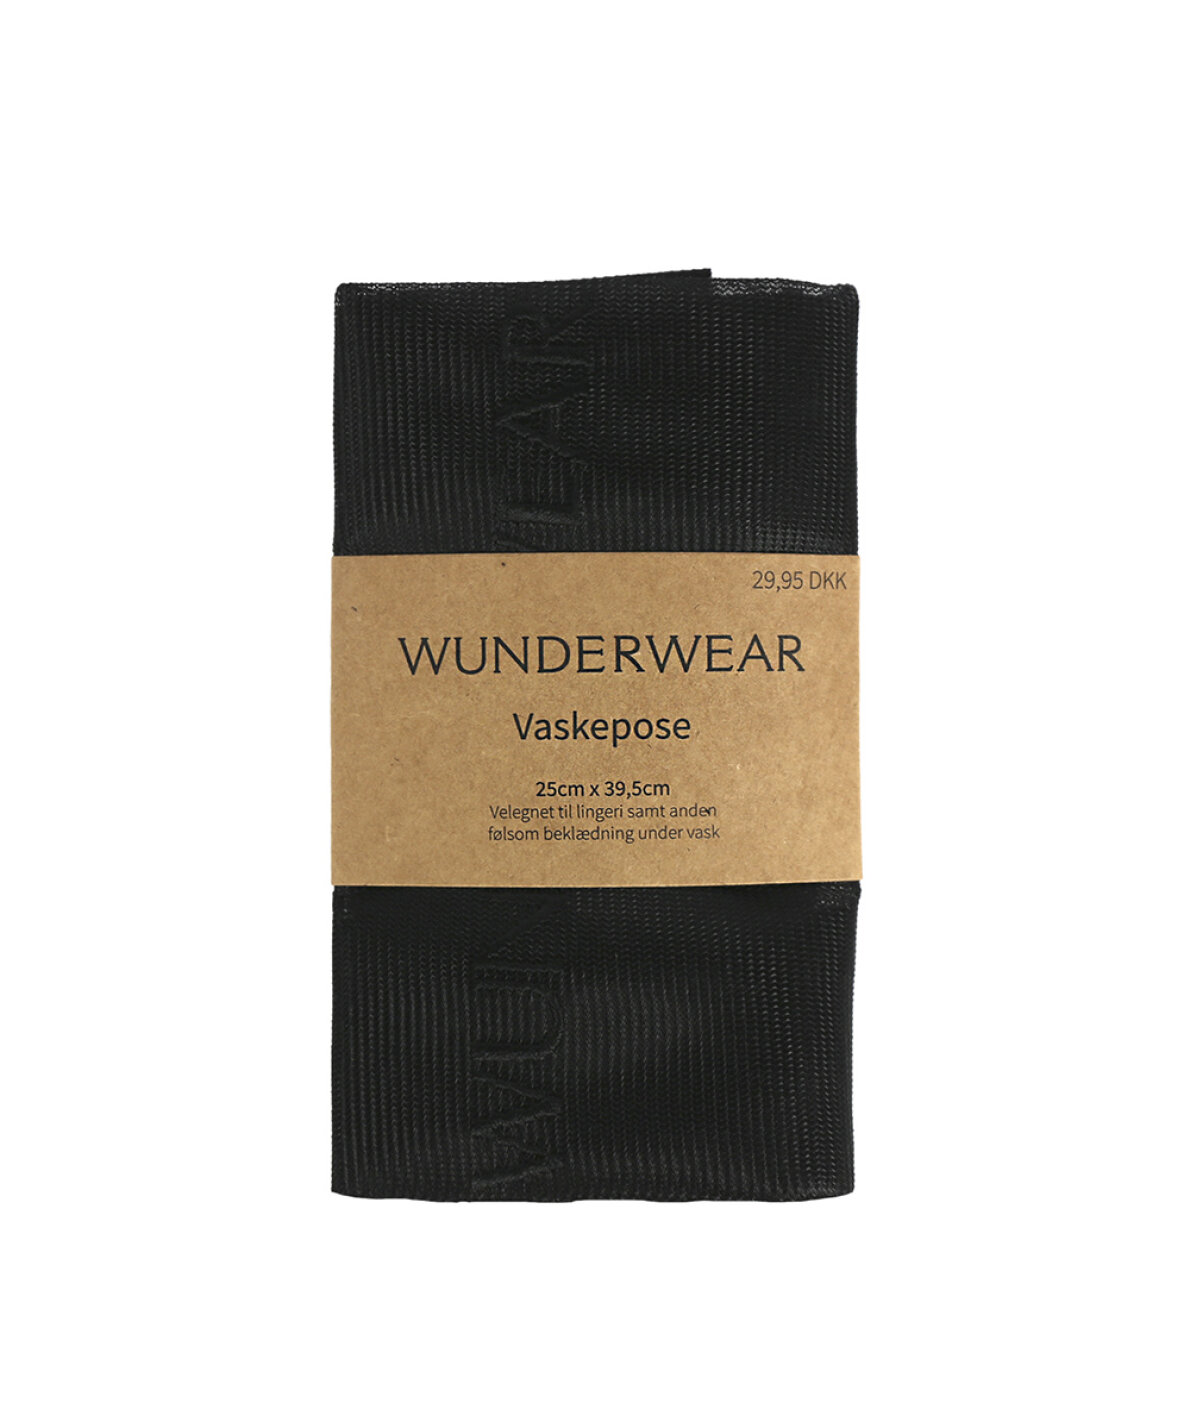 ægtemand Spectacle Sag Wunderwear Lingeri Vaskepose - Køb på Wunderwear.dk